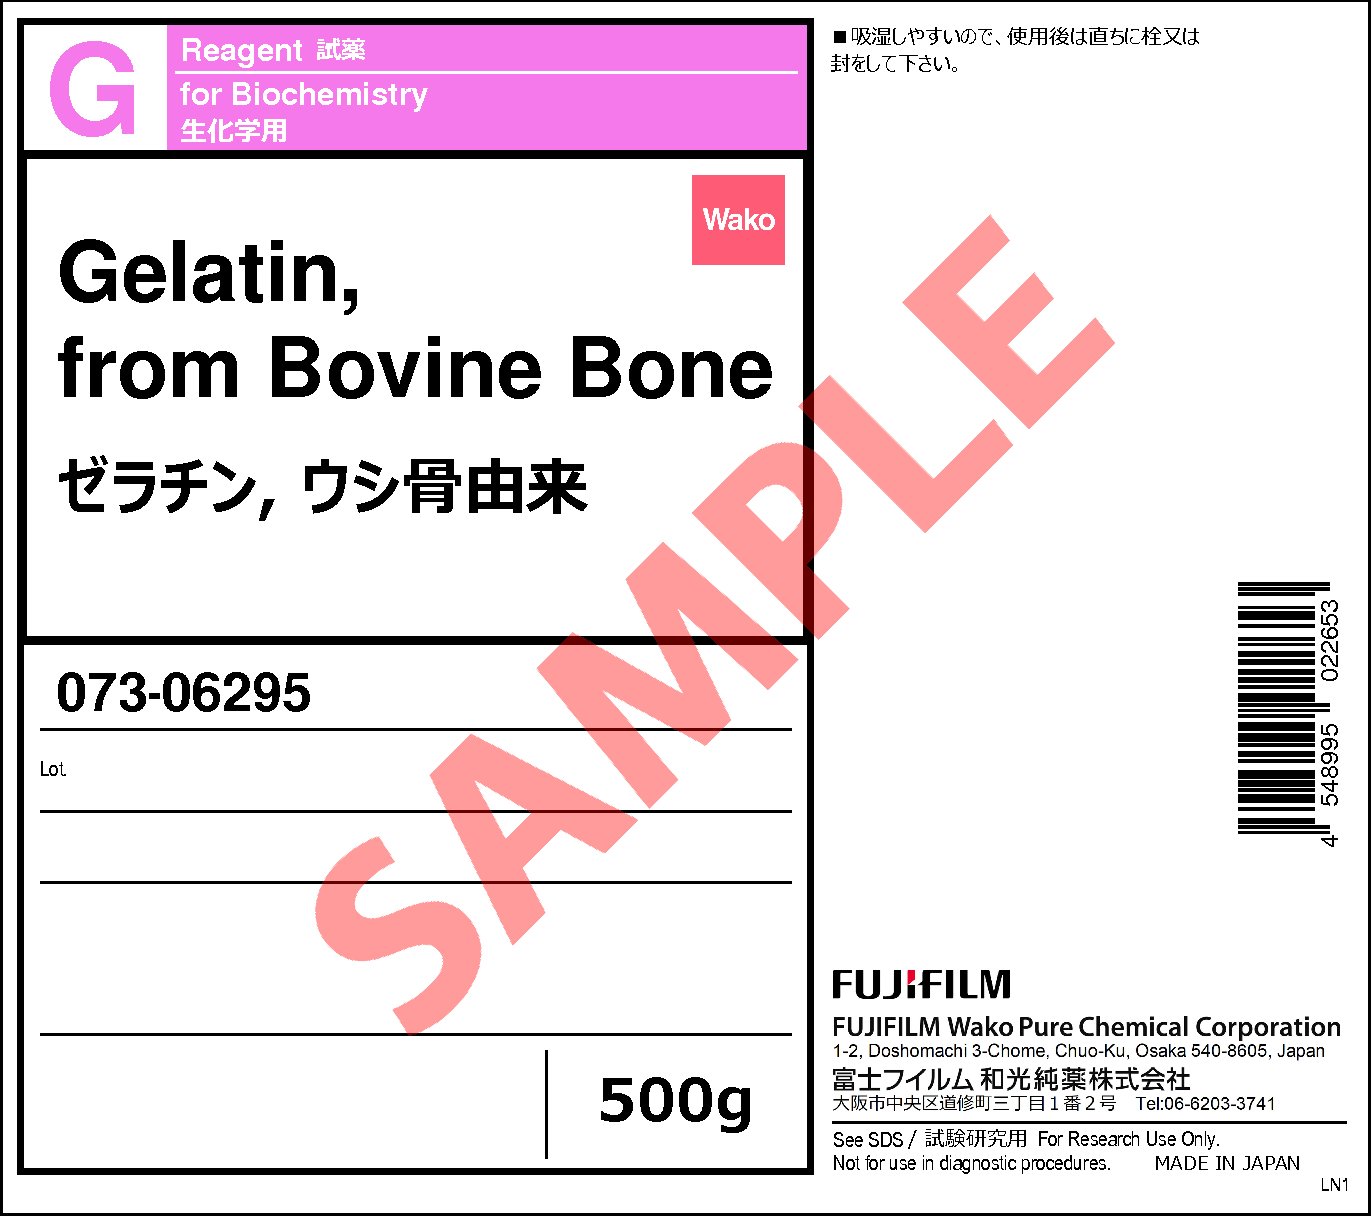 9000-70-8・ゼラチン, ウシ骨由来 ・Gelatin, from Bovine Bone ・071 